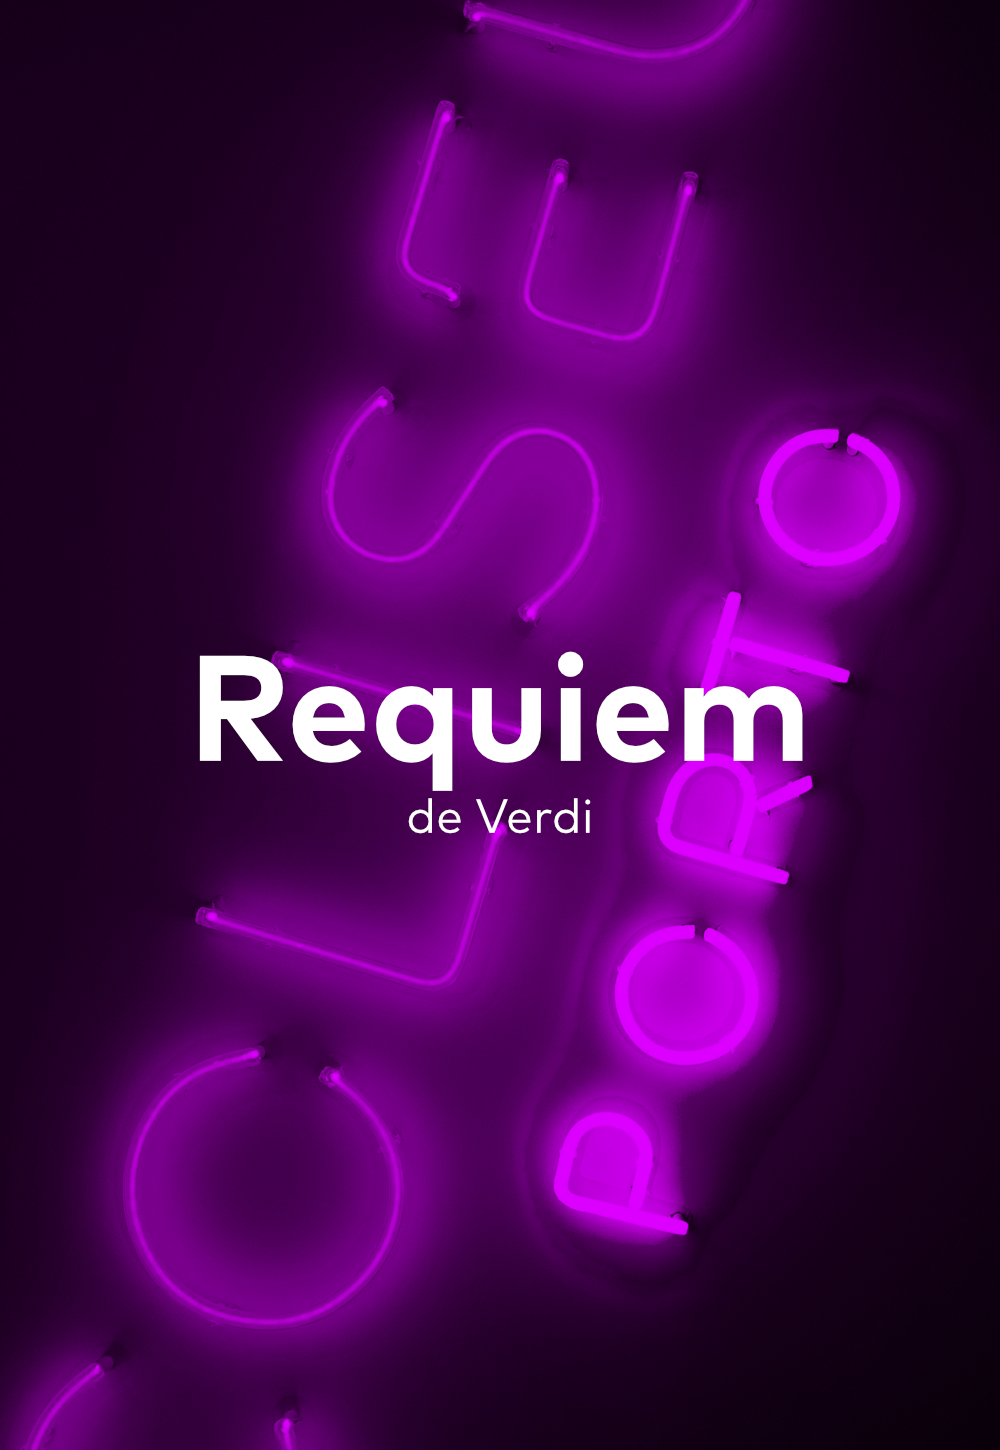 Requiem de Verdi - Coliseu do Porto